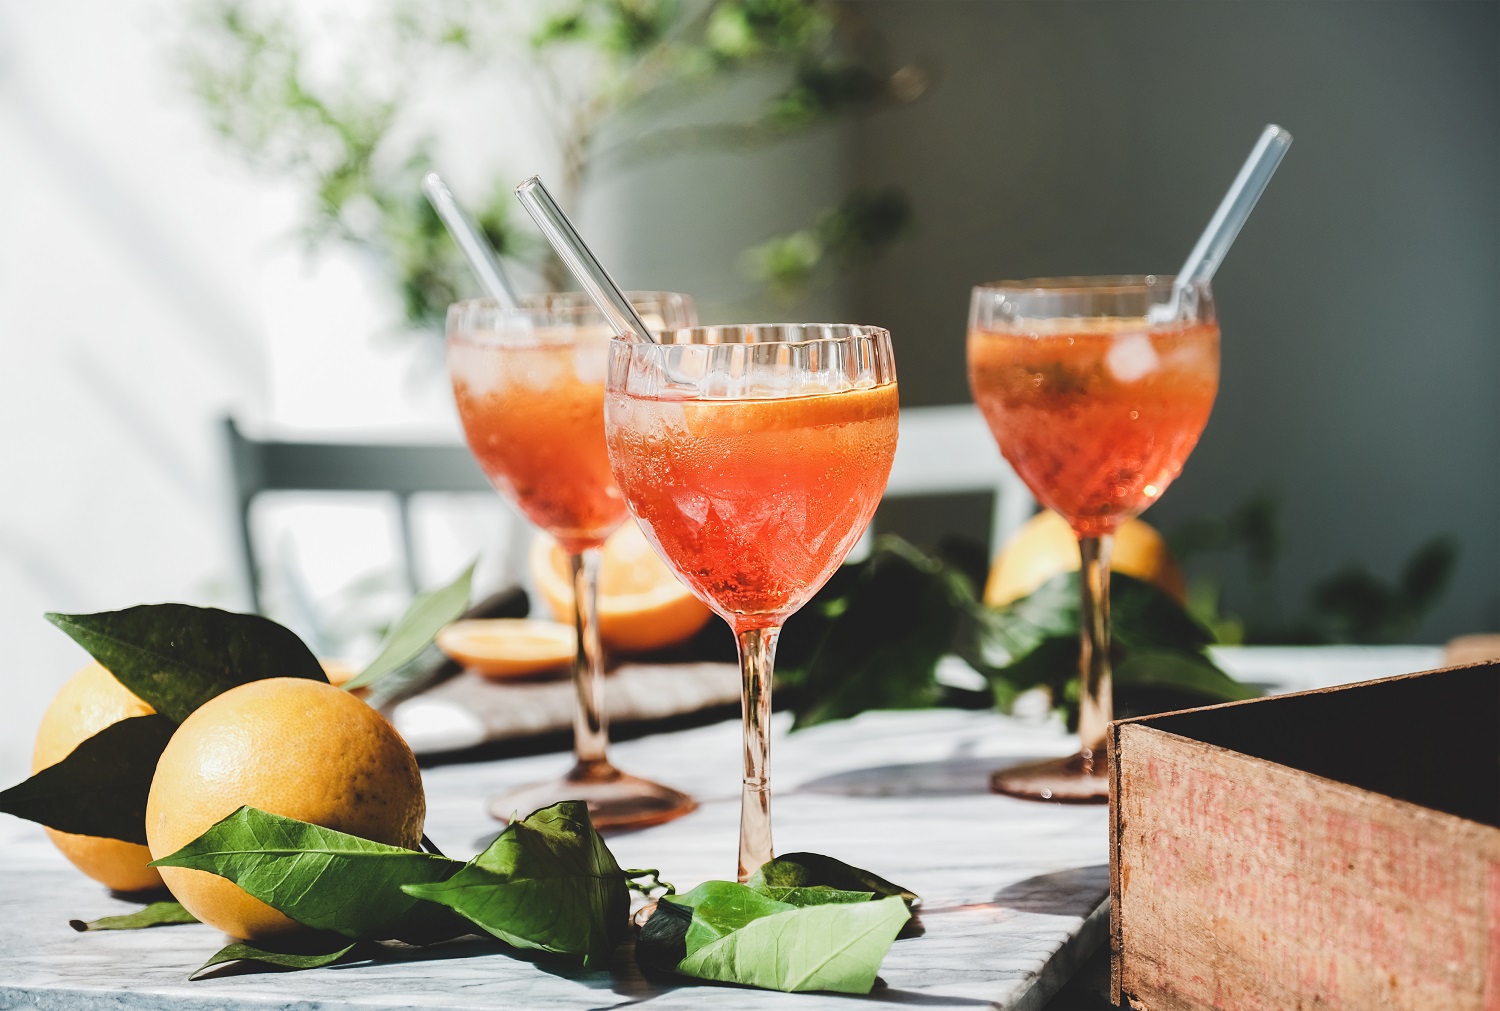 Spritz aperitief alcohol cocktail in glazen met verse sinaasappelen en ijs op grijs marmeren bord, selectieve focus, close-up. Zomer verfrissend drankje concept